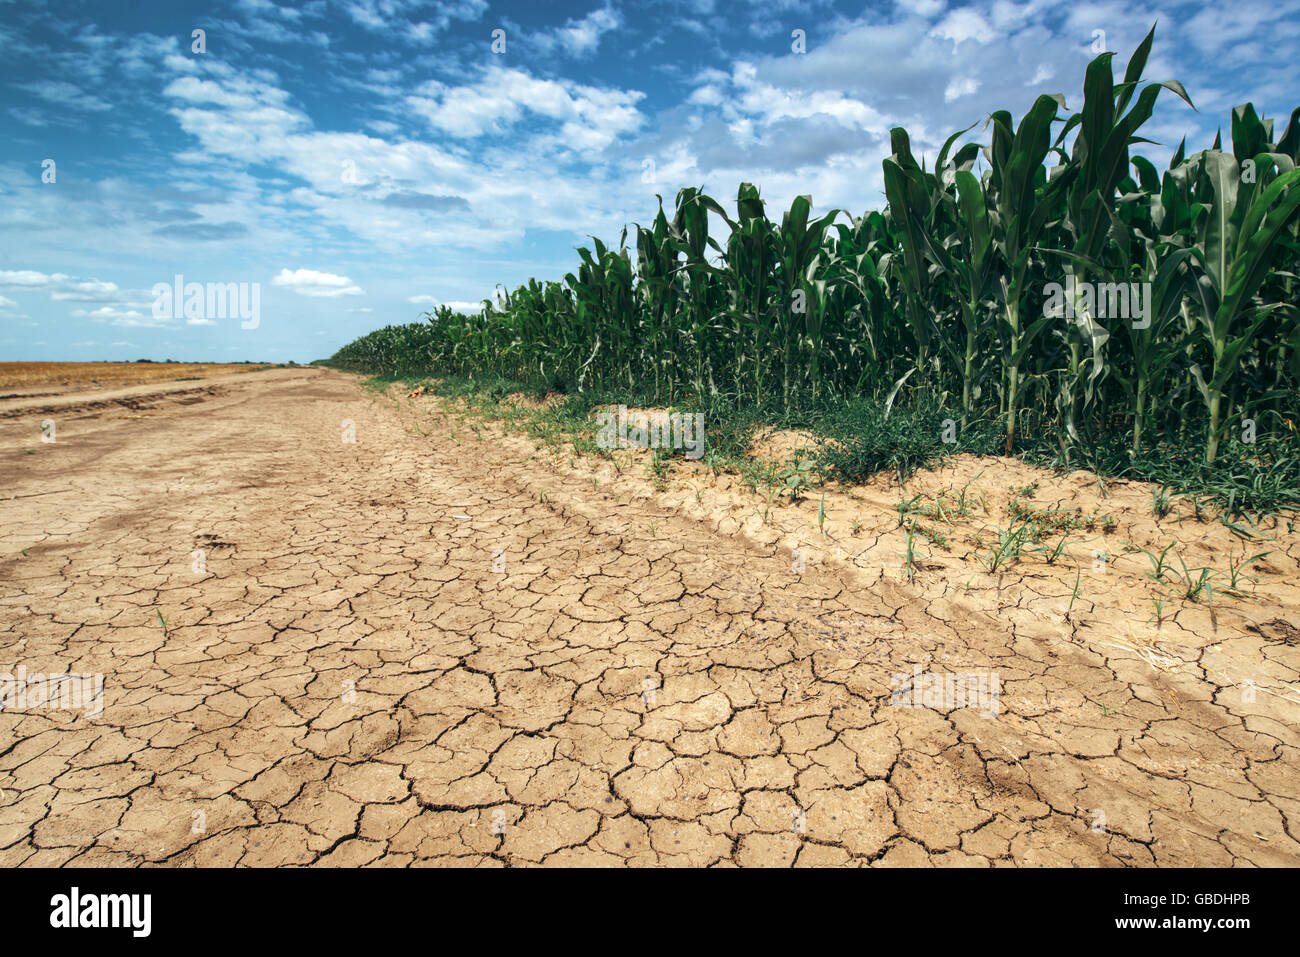 Croissance des cultures de maïs dans des conditions de sécheresse, champ de maïs vert sur la terre sèche de boue se fissure Banque D'Images